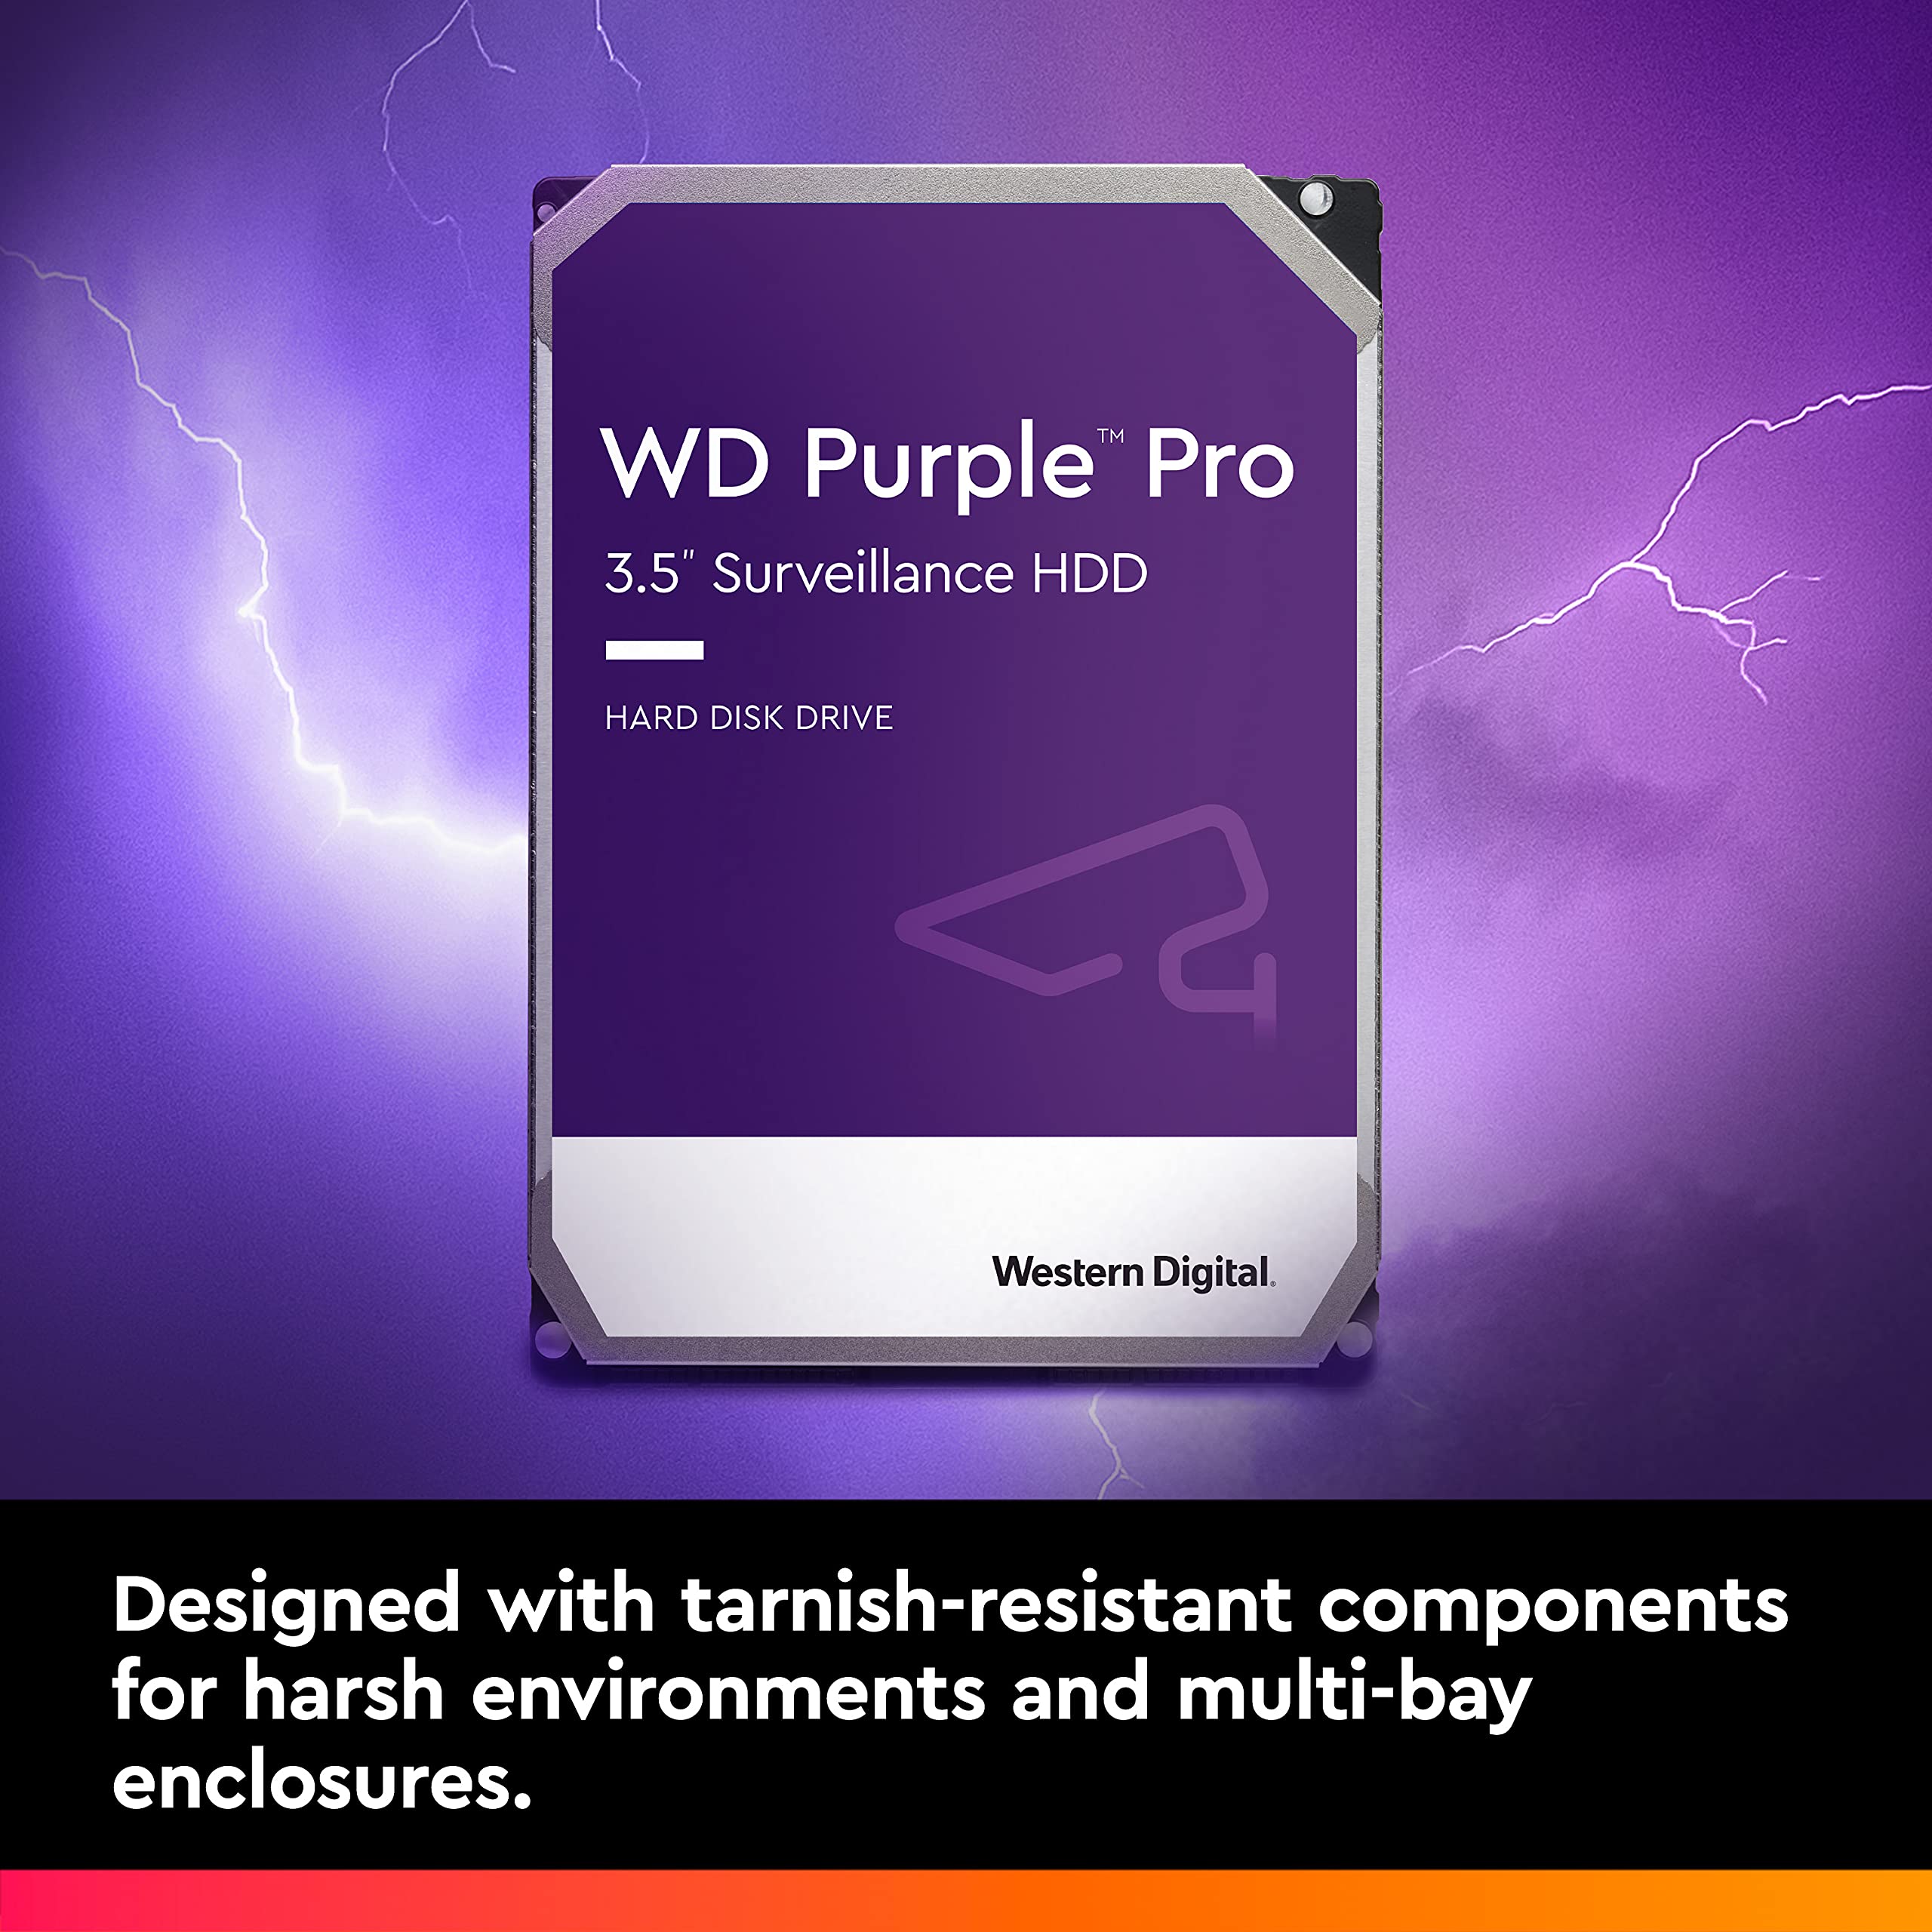 Western Digital 10TB WD Purple Pro Surveillance Internal Hard Drive HDD - SATA 6 Gb/s, 256 MB Cache, 3.5